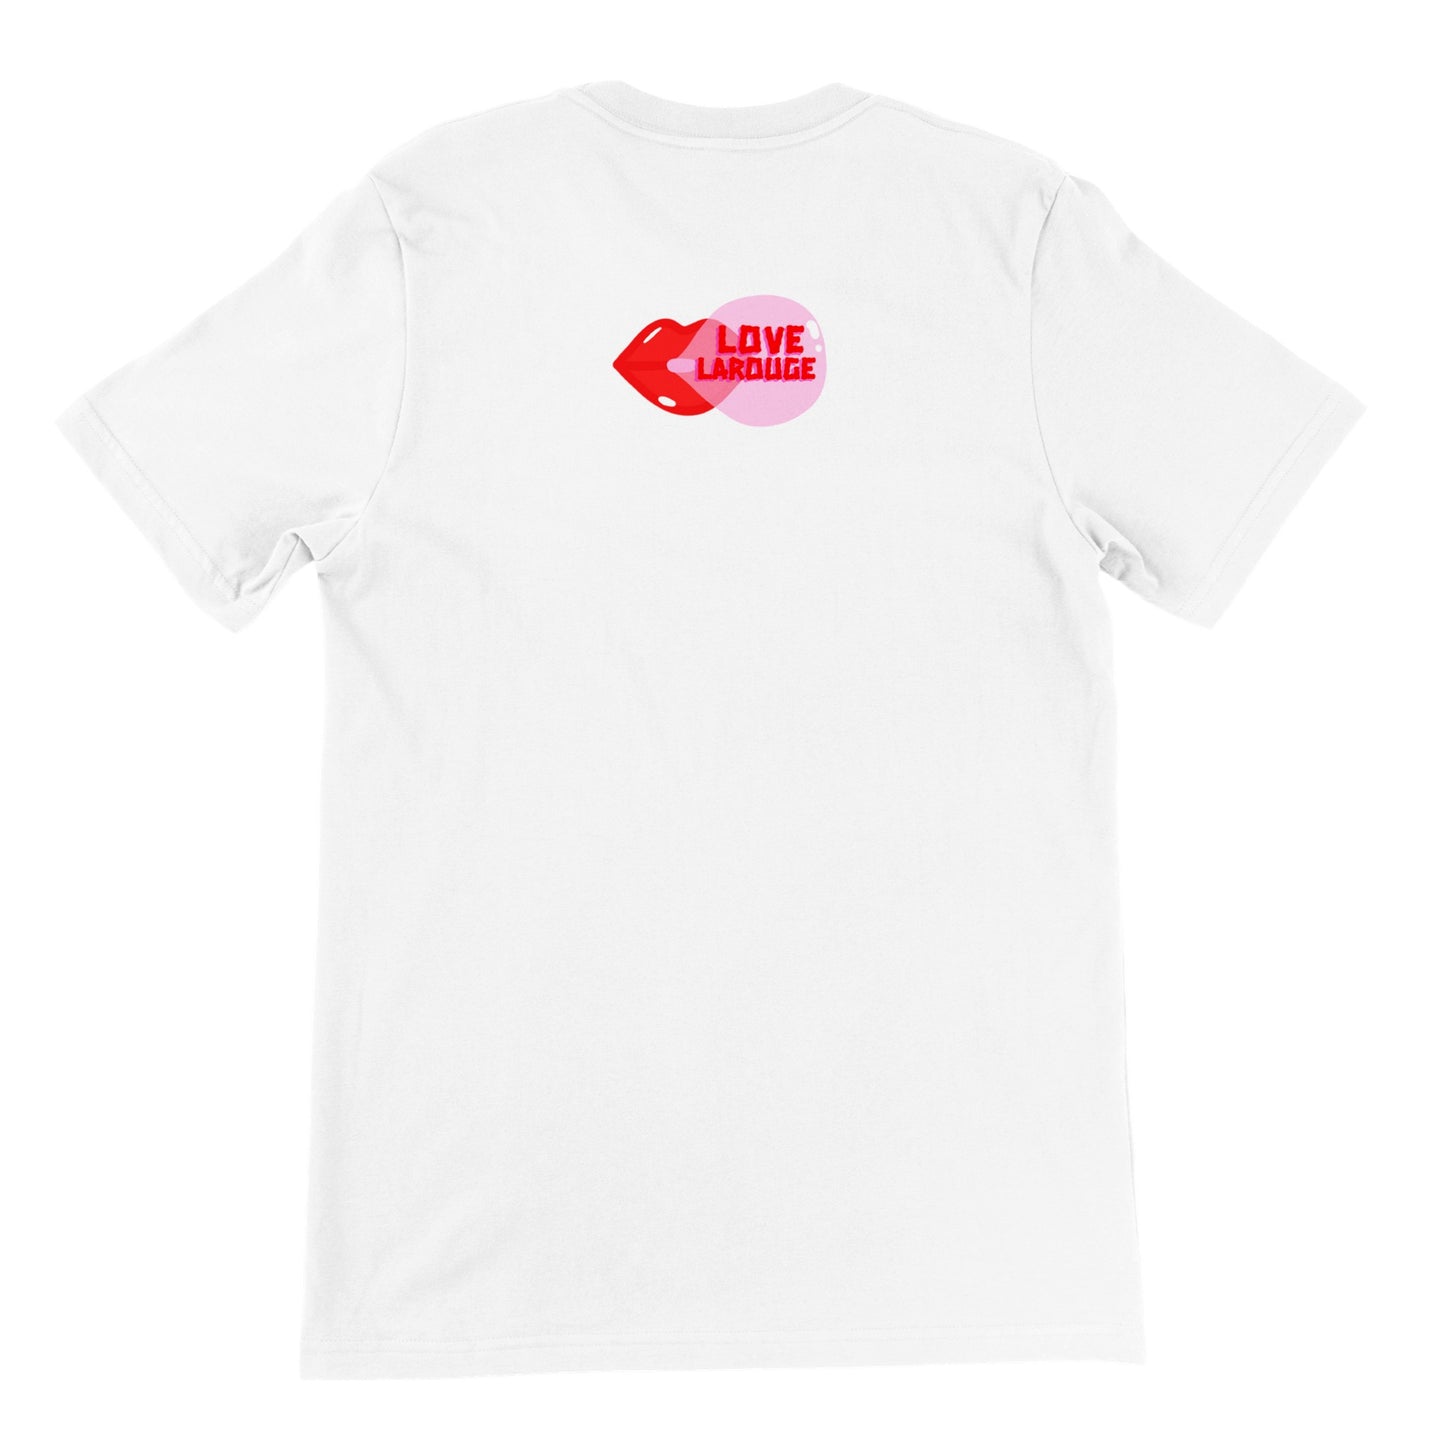 LOVE LAROUGE Premium "LADY PARTS" Unisex Crewneck T-shirt